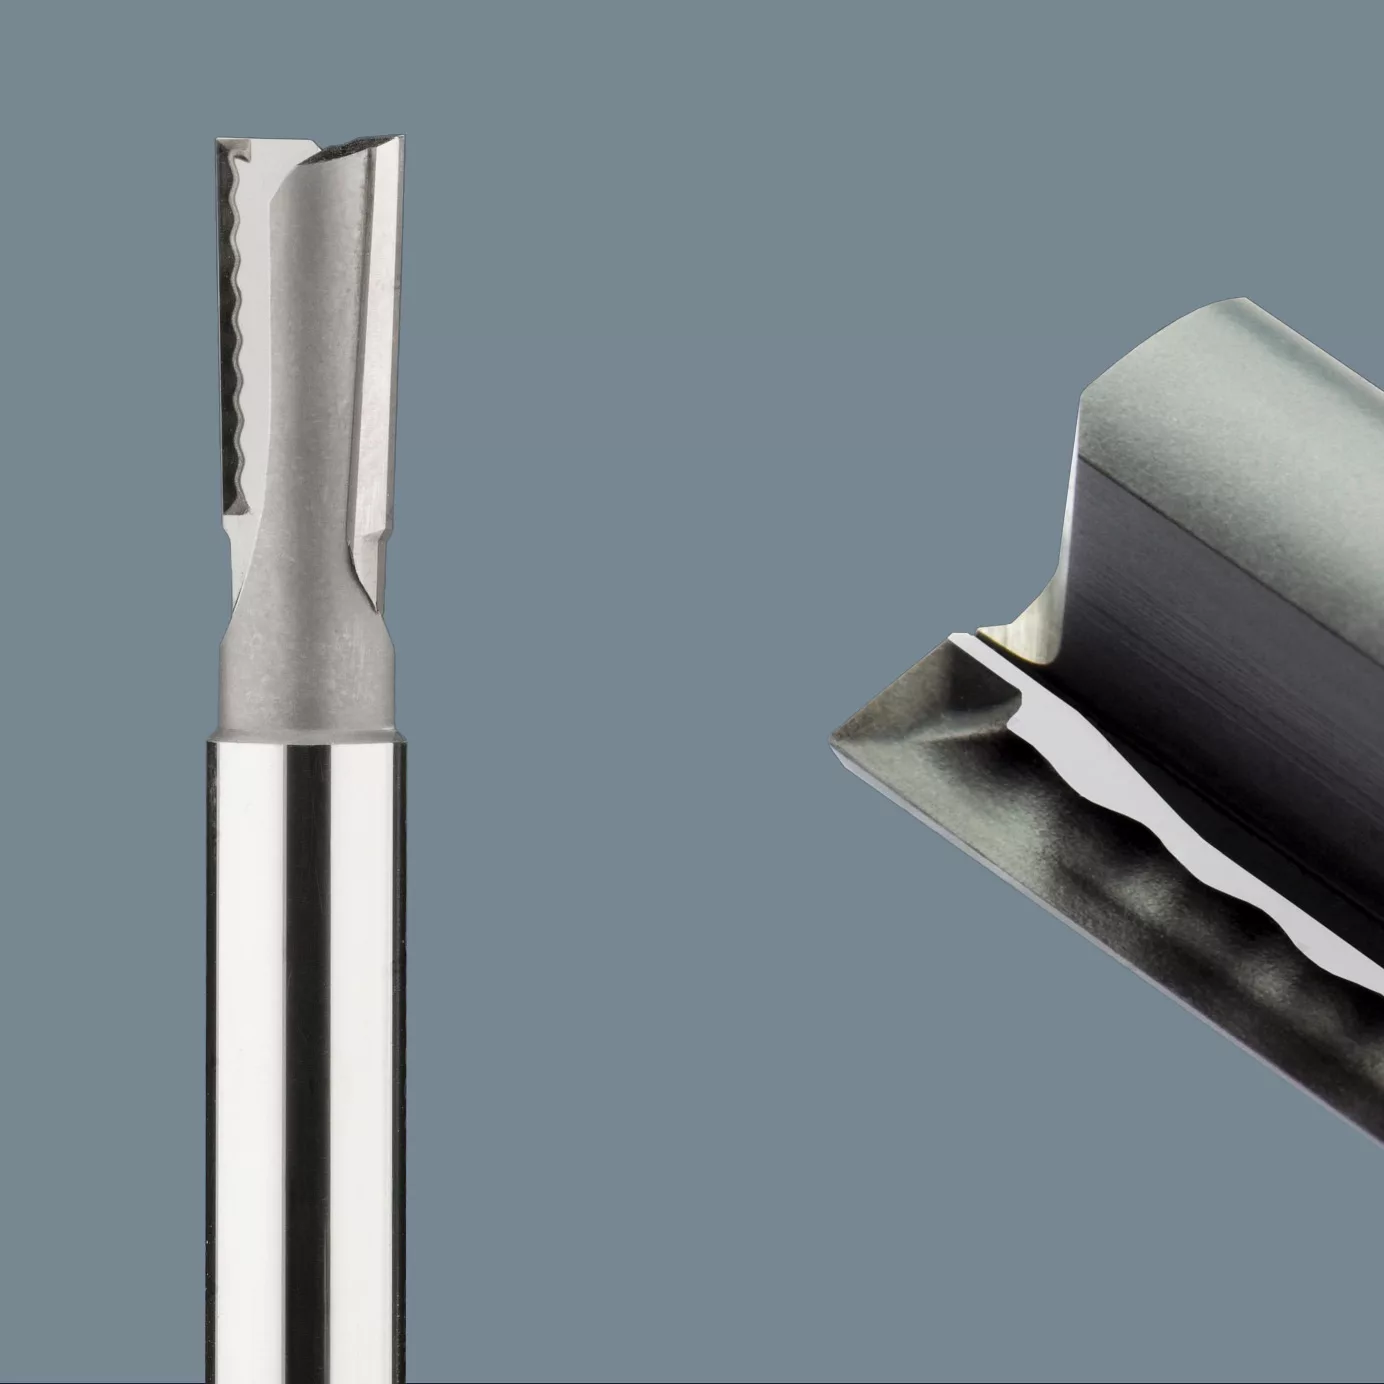 Microgravure laser de marches de guidage de copeaux 3D en diamant polycristallin (PCD) d'une dureté Vickers de 6500 HV